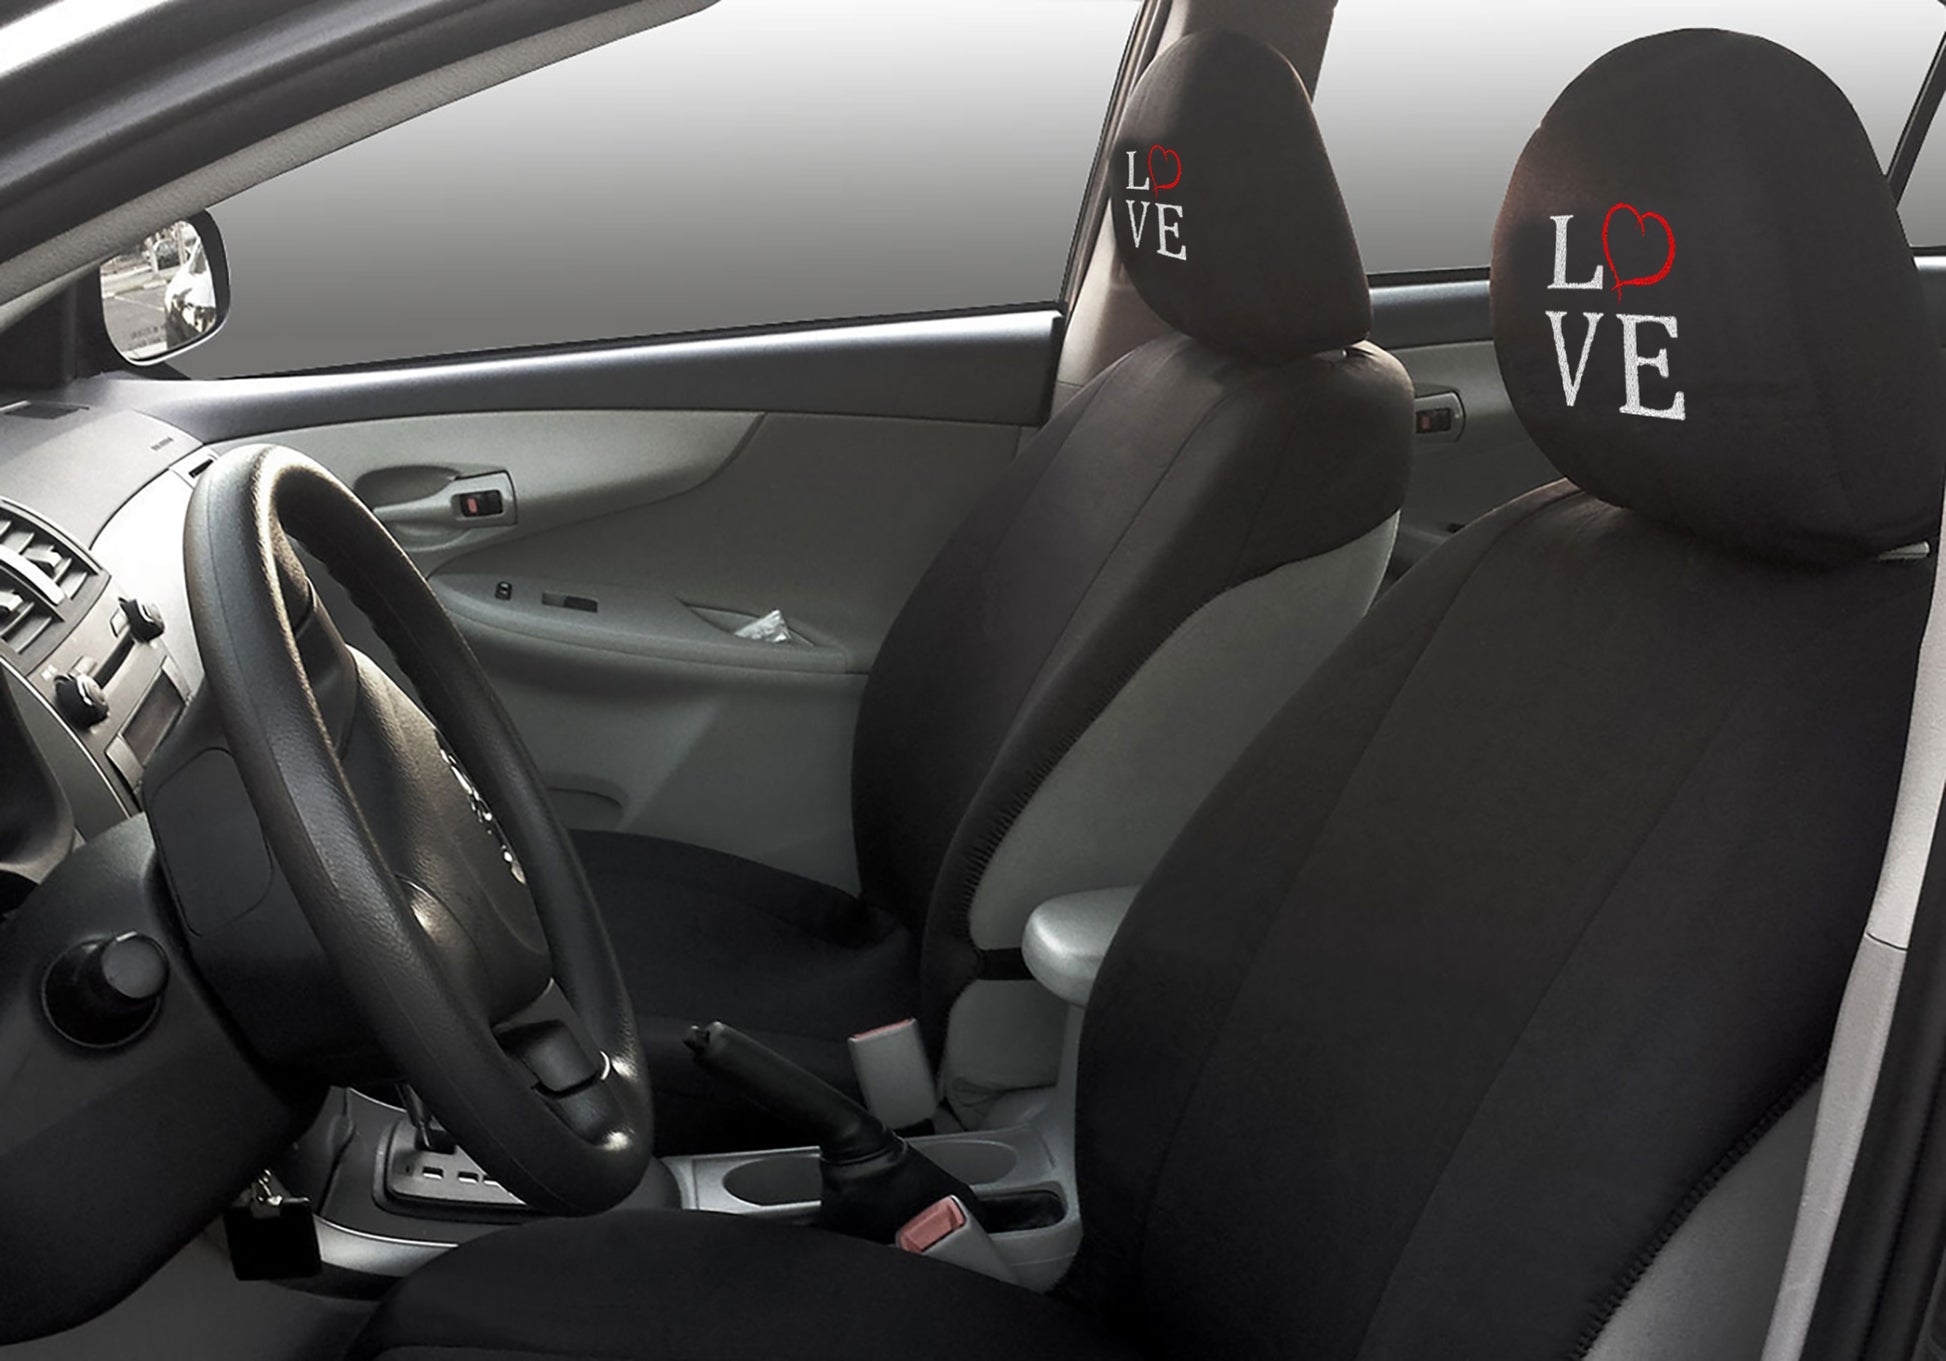 Love Heart Design Auto Truck SUV Car Seat Headrest Cover Accessory 1 Piece - Yupbizauto